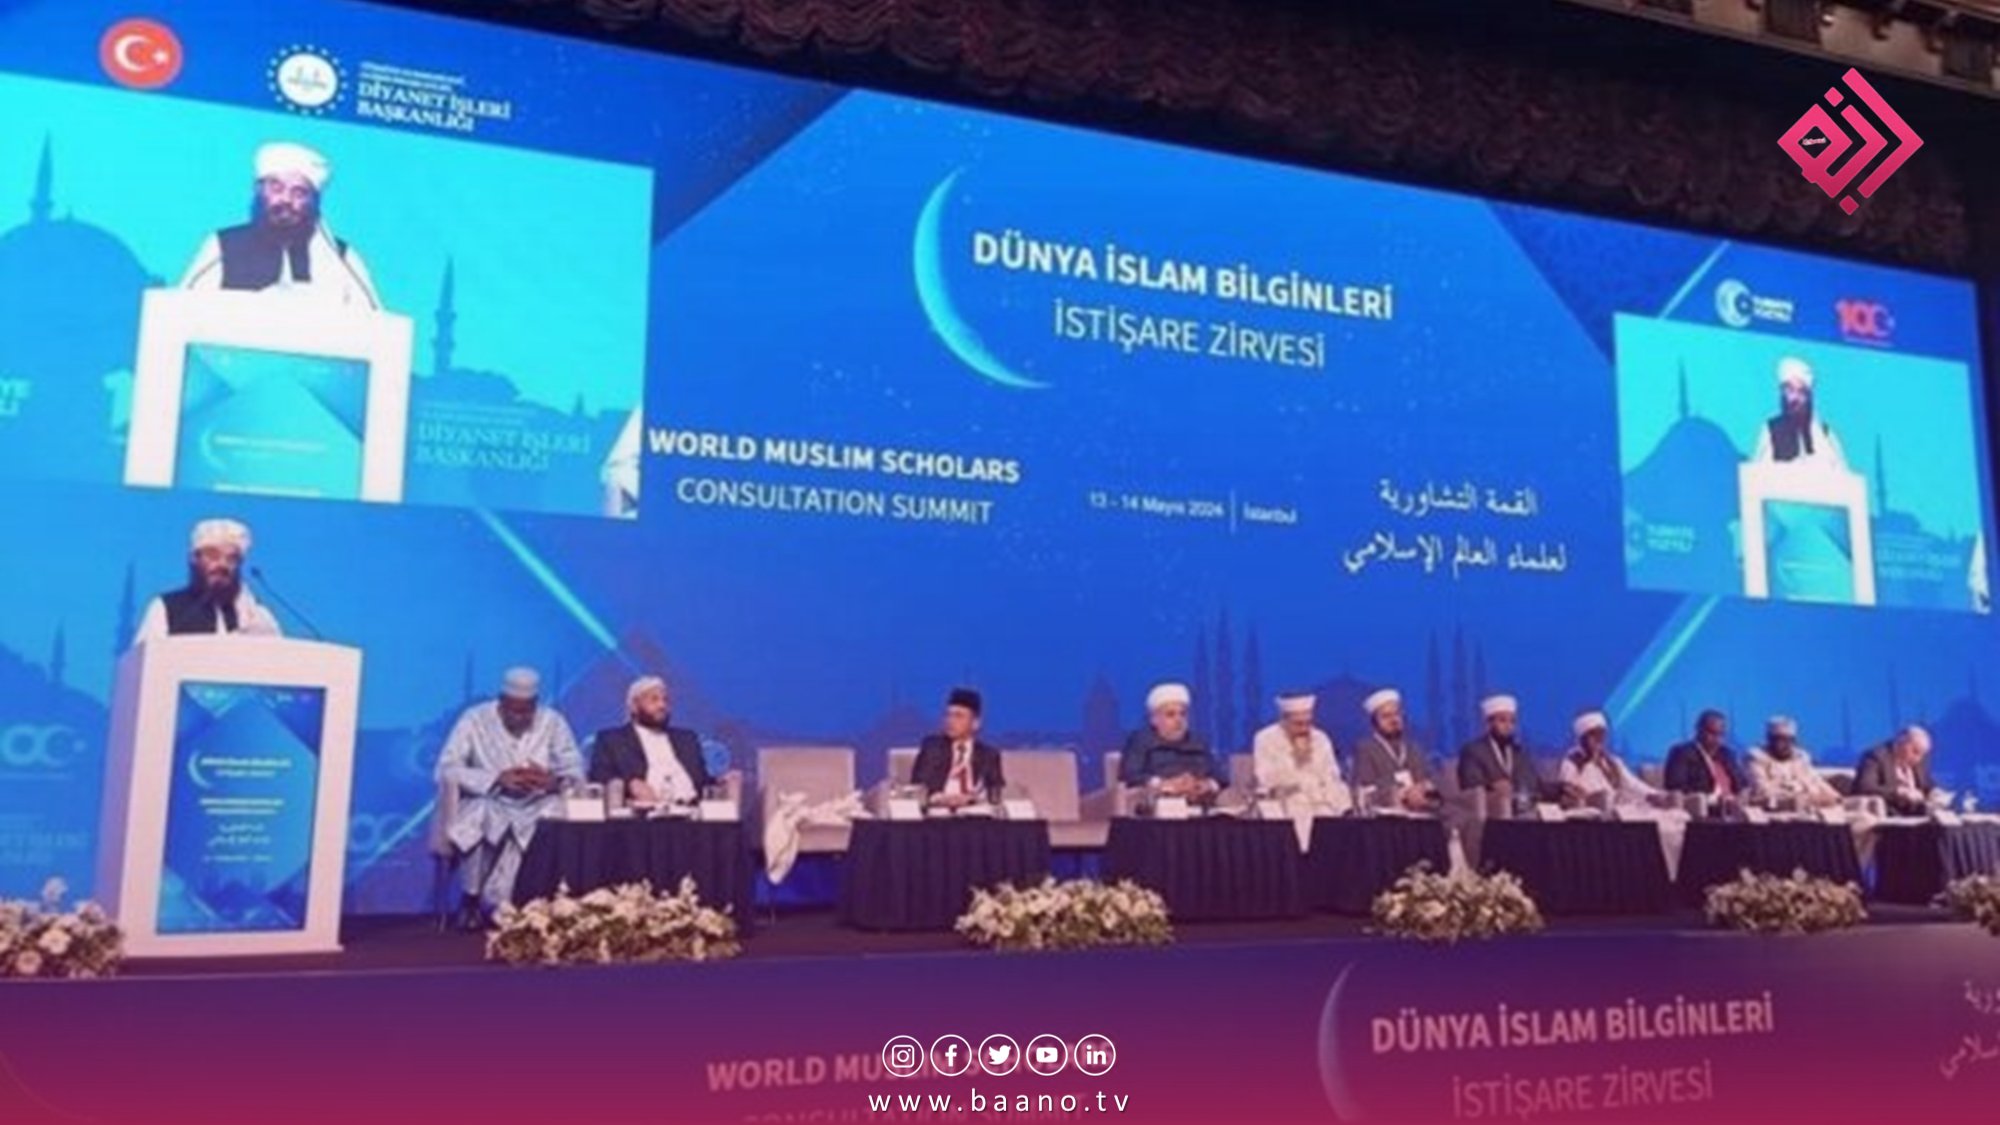 پایان کنفرانس مشورتی علمای جهان اسلام؛ تاکید برهمگرایی برای رفع چالش های امت اسلامی